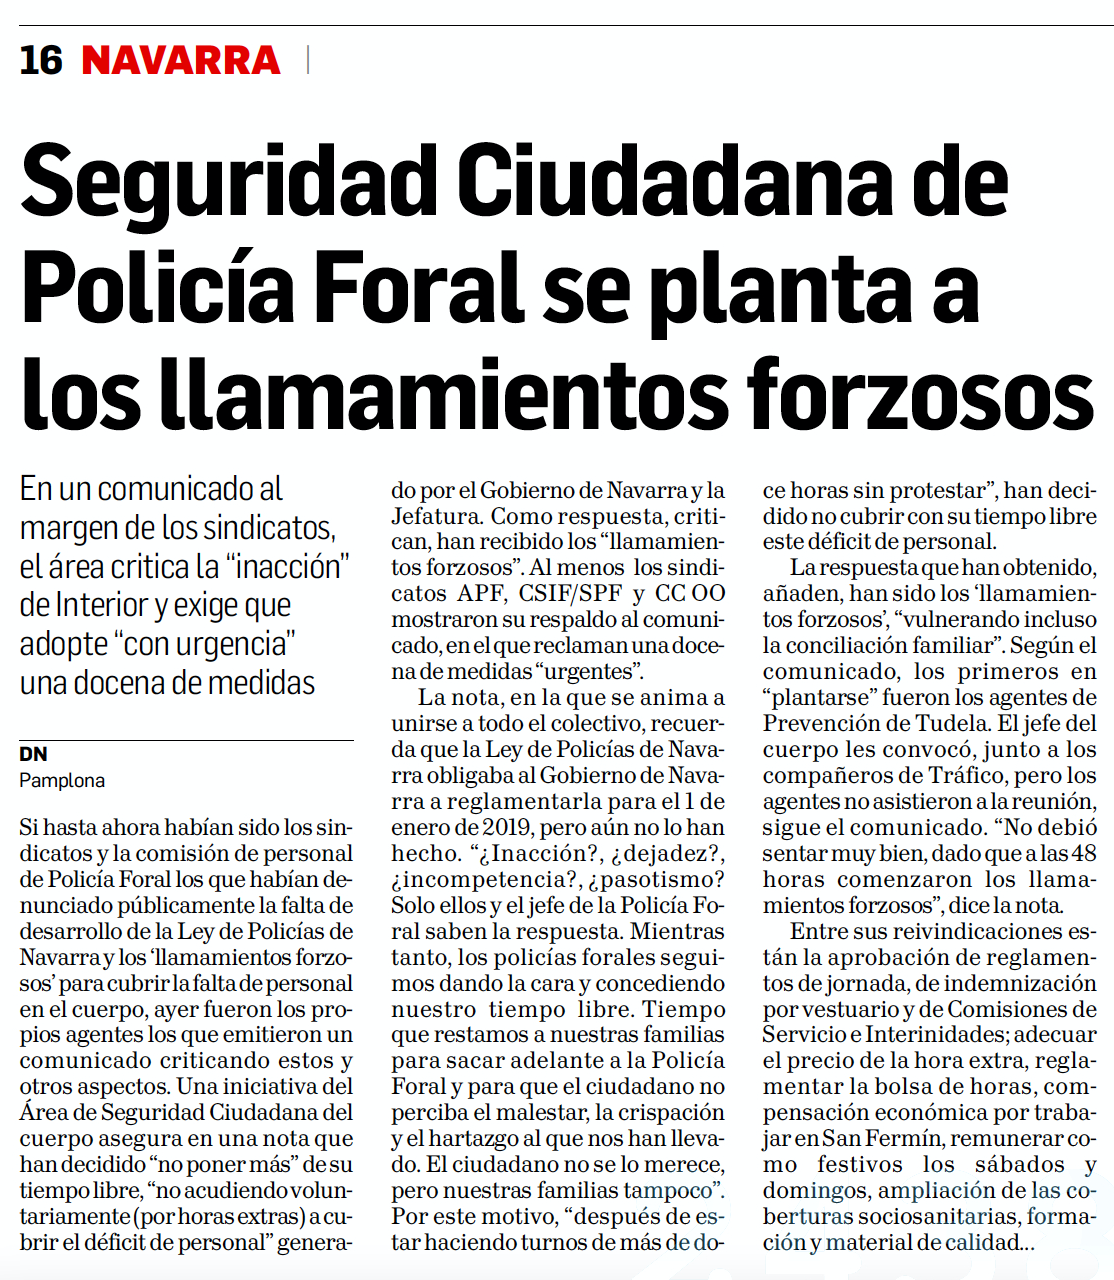 Noticia publicada por el Diario de Navarra sobre Policias de Navarra